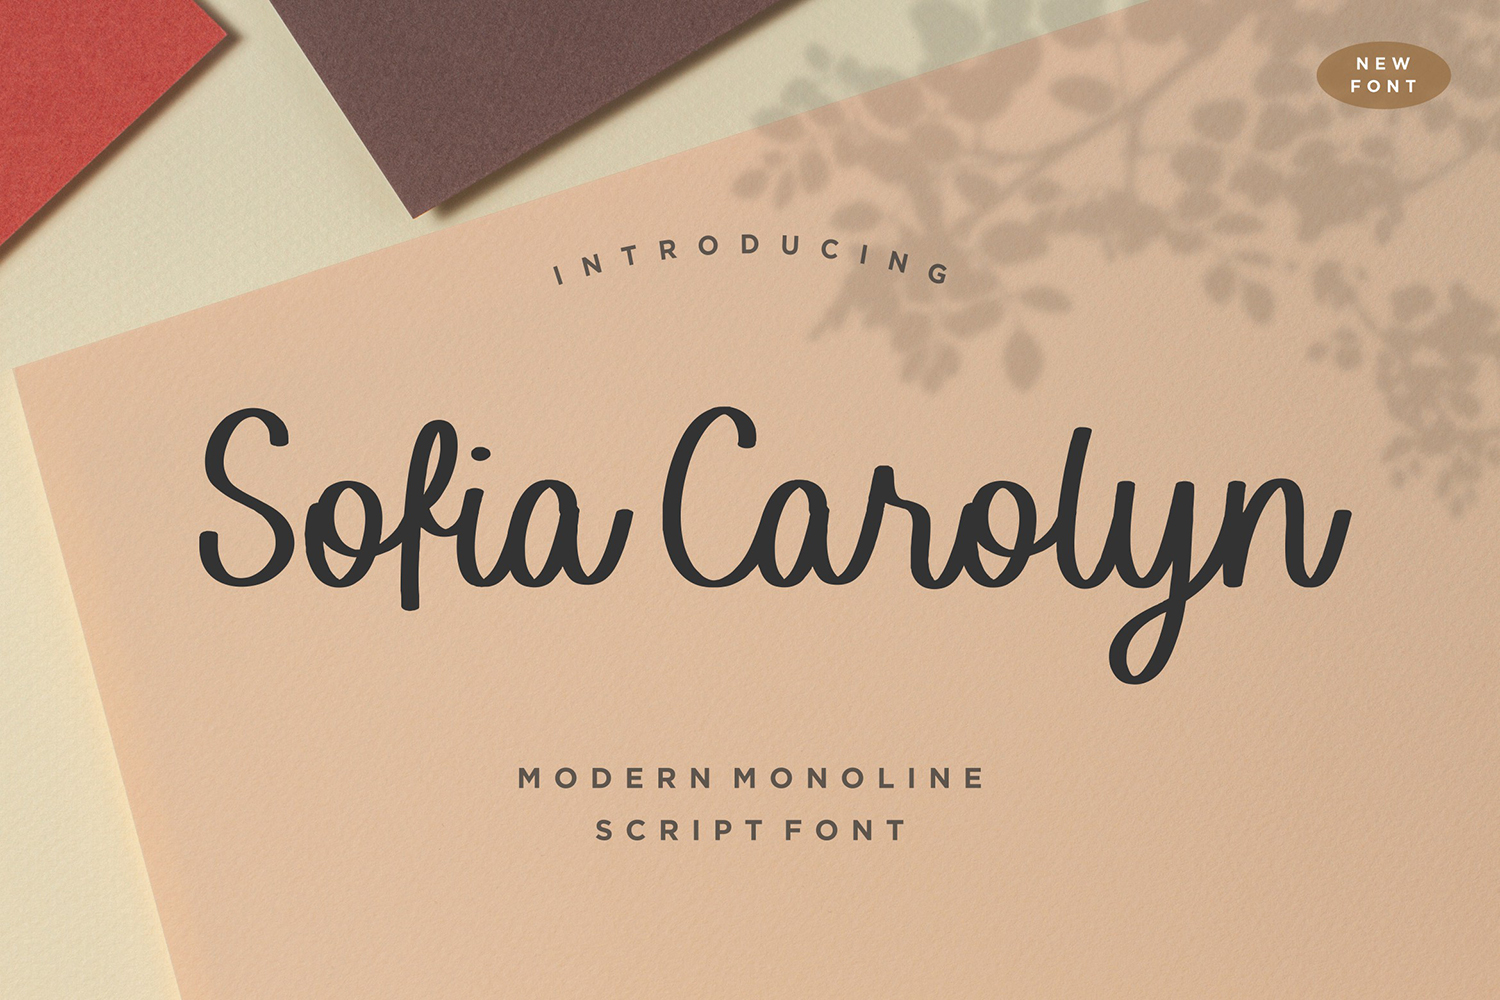 Sofia Carolyn Free Font